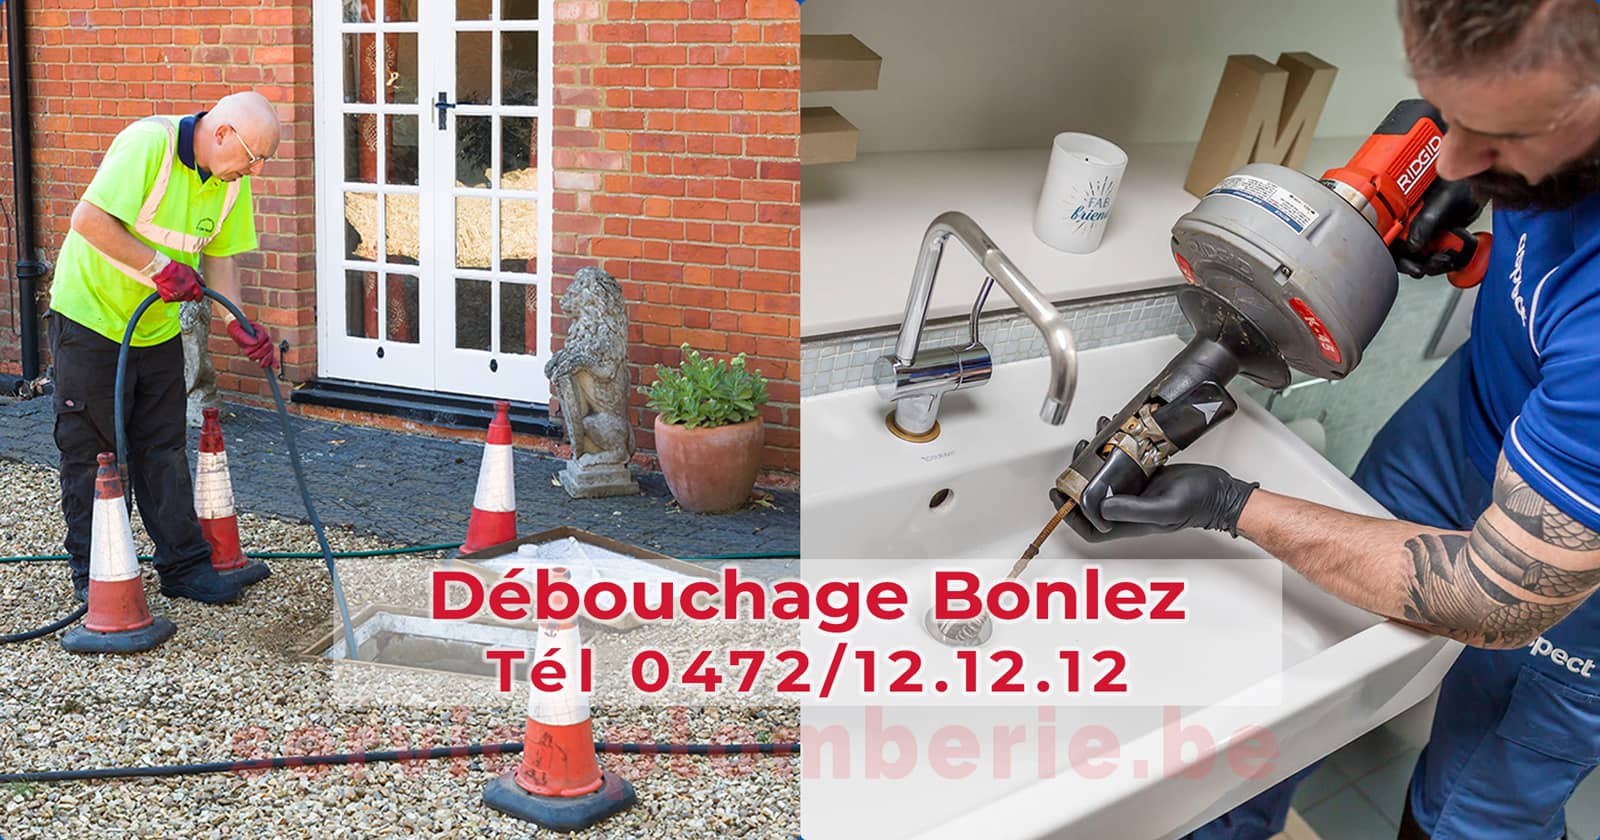 Débouchage Bonlez d'égout Service Plomberie Tél 0472/12.12.12